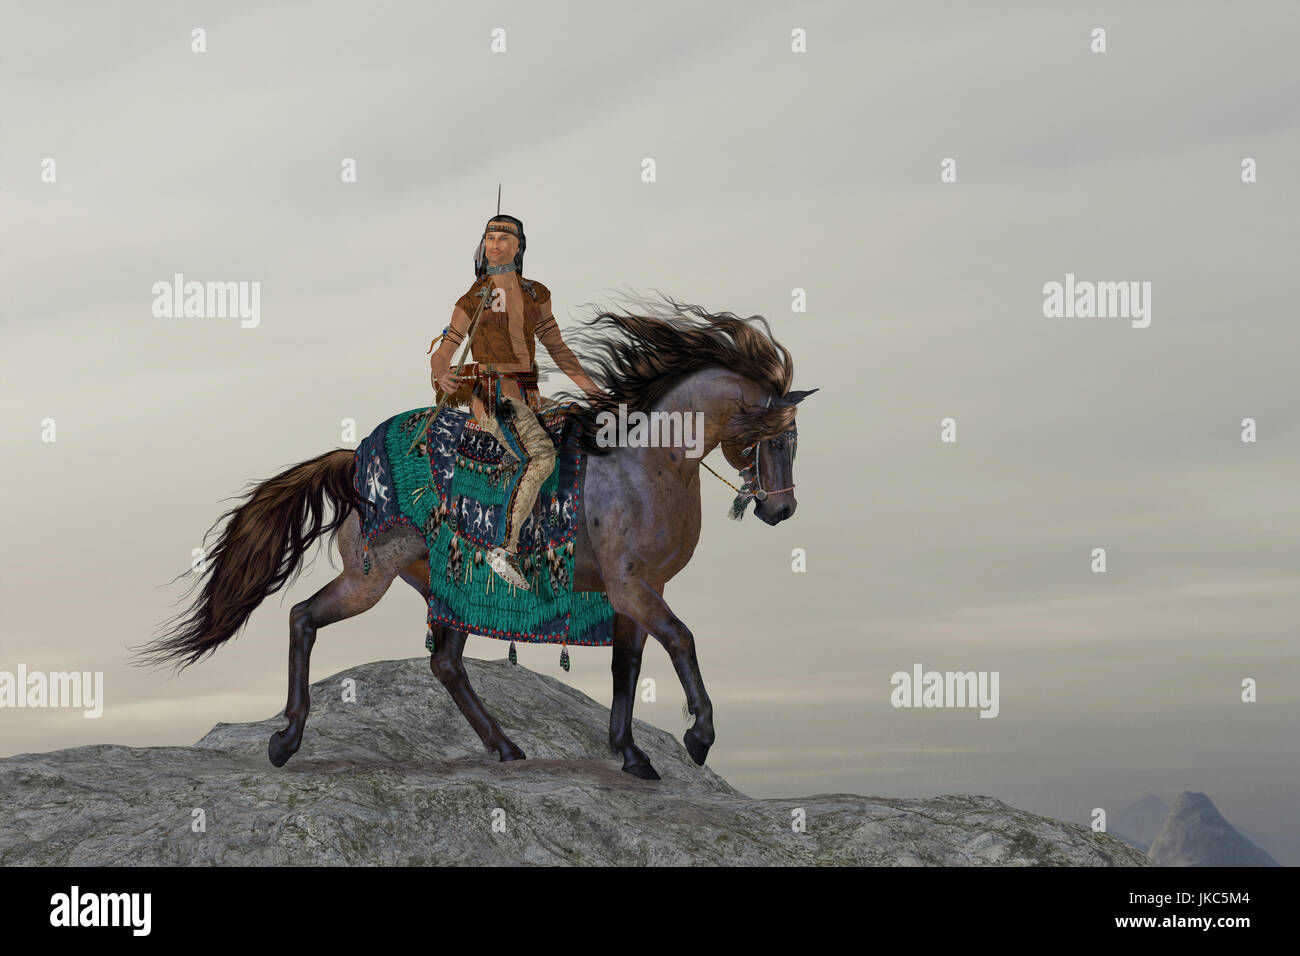 Un Indien de l'amérique du nord recherches courageux les montagnes sur son cheval au gros gibier de ramener à sa tribu. Banque D'Images